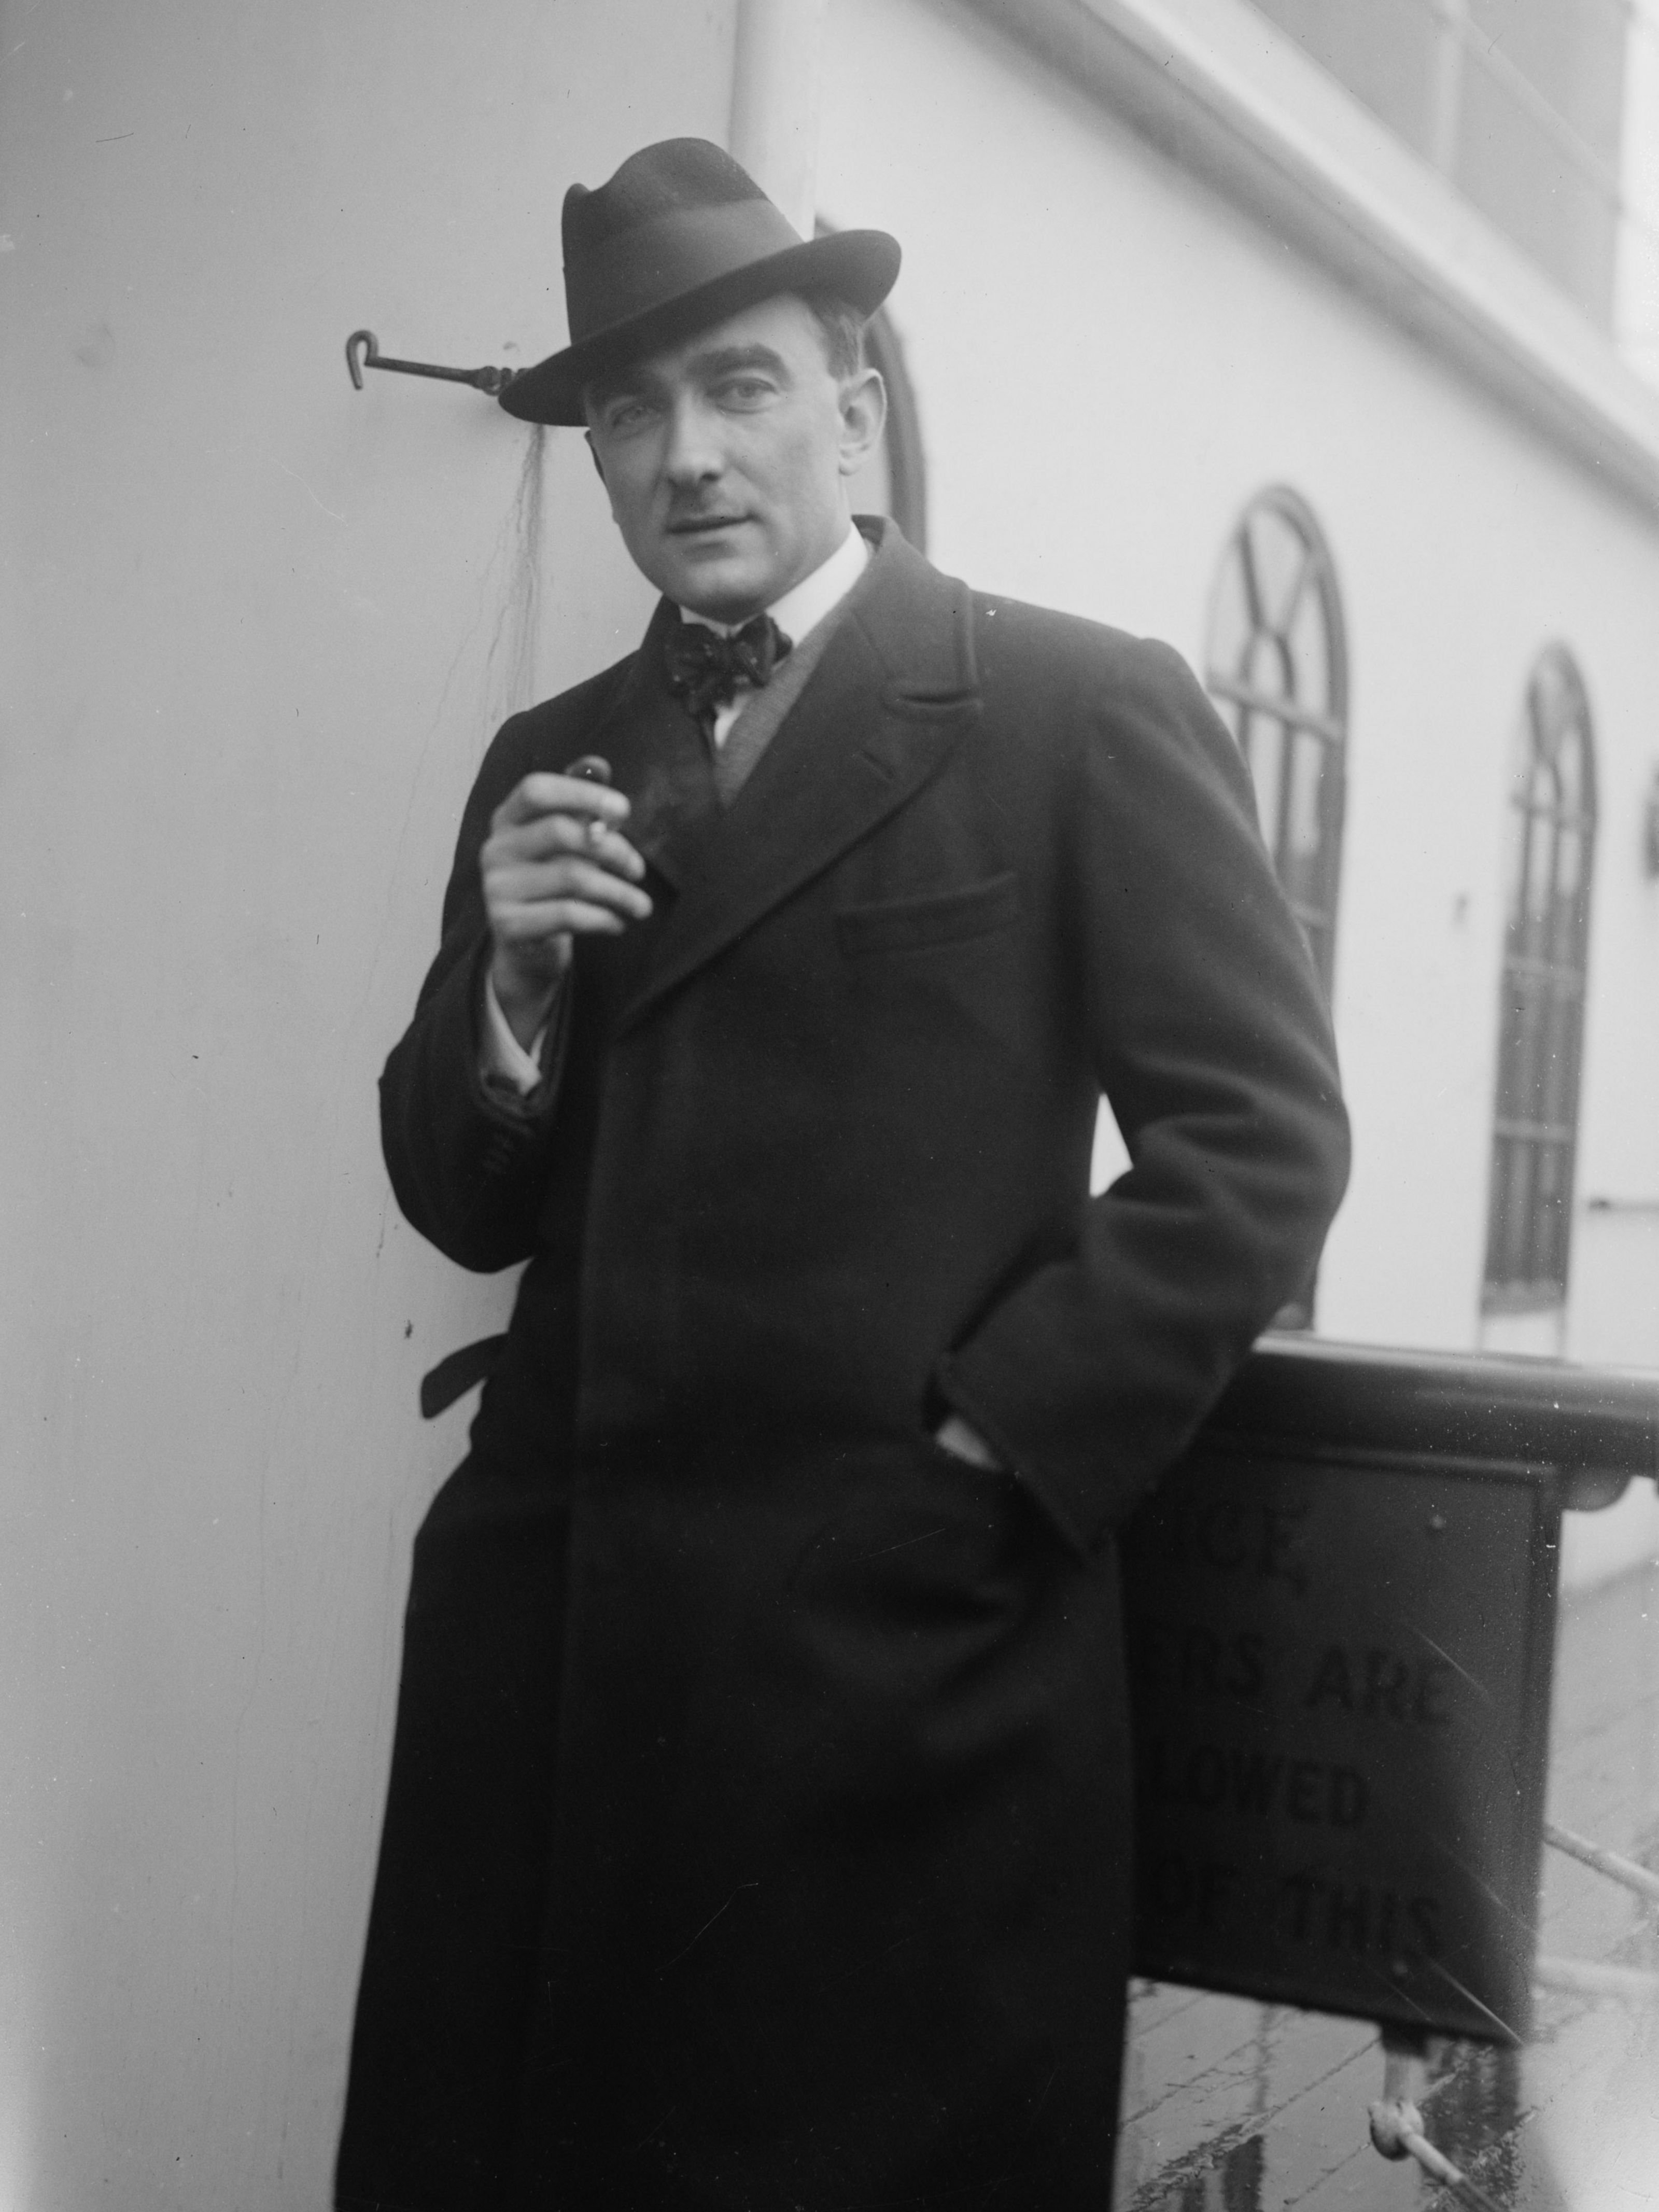 Porträt von Karol Szymanowski. Er trägt einen Mantel und einen Hut und hält eine Zigarette in seiner rechten Hand.